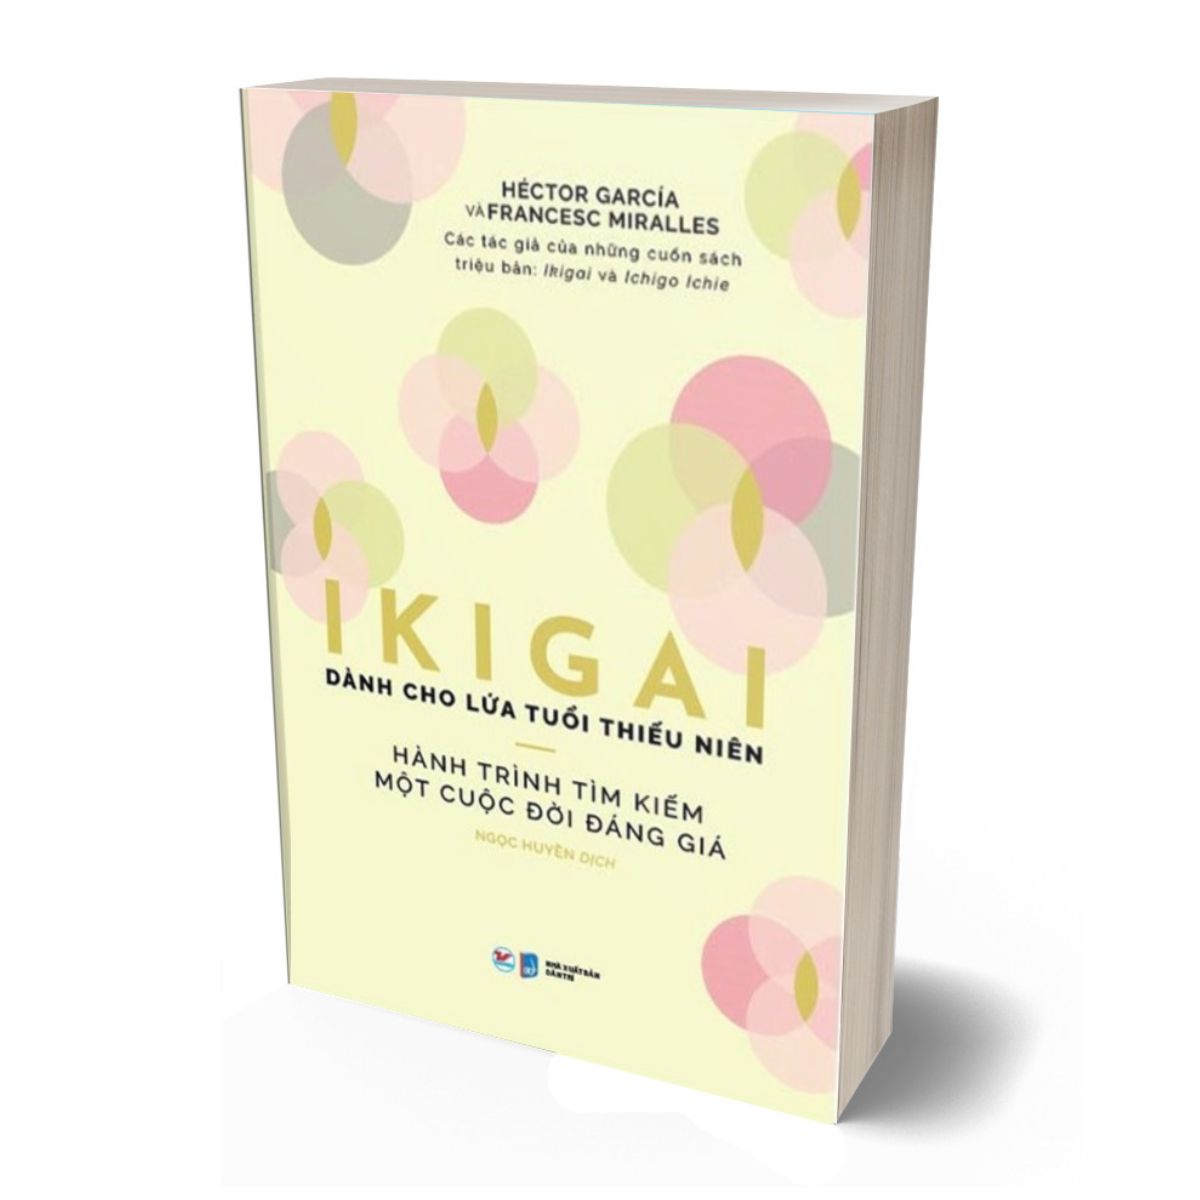 Ikigai Danh Cho Lứa Tuổi Thiếu Niên - Hành Trình Tìm Kiếm Một Cuộc Đời Đáng Giá